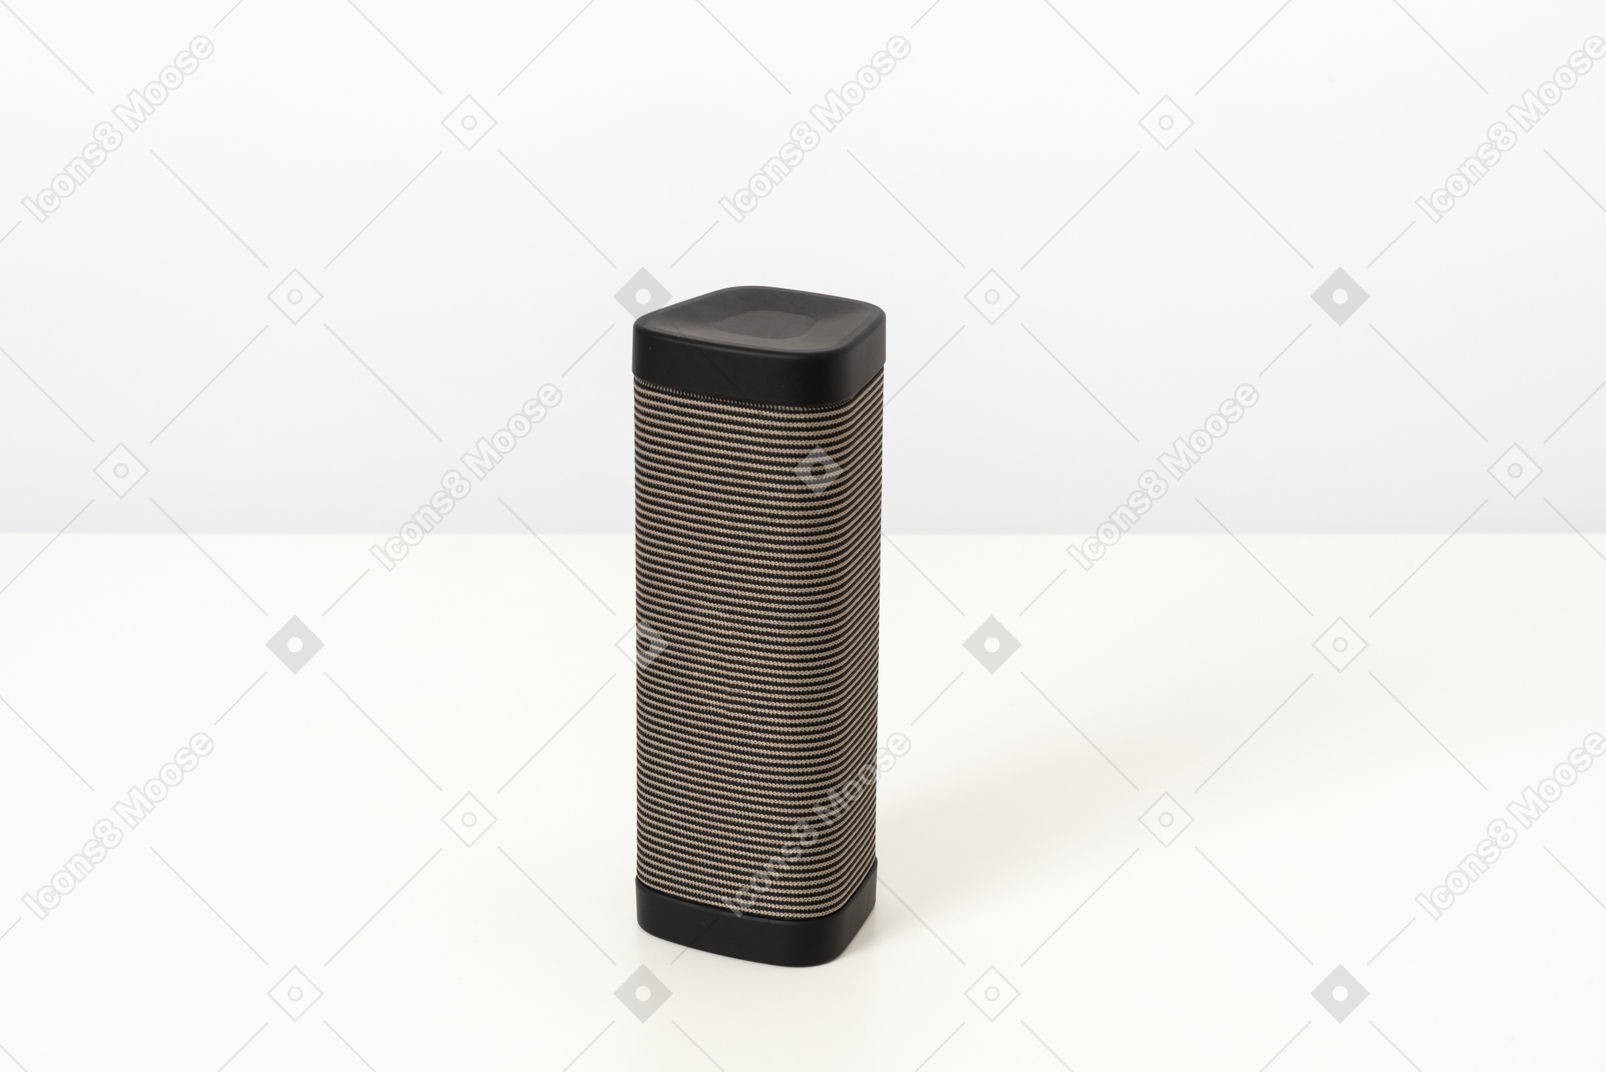 Black speaker on a white background